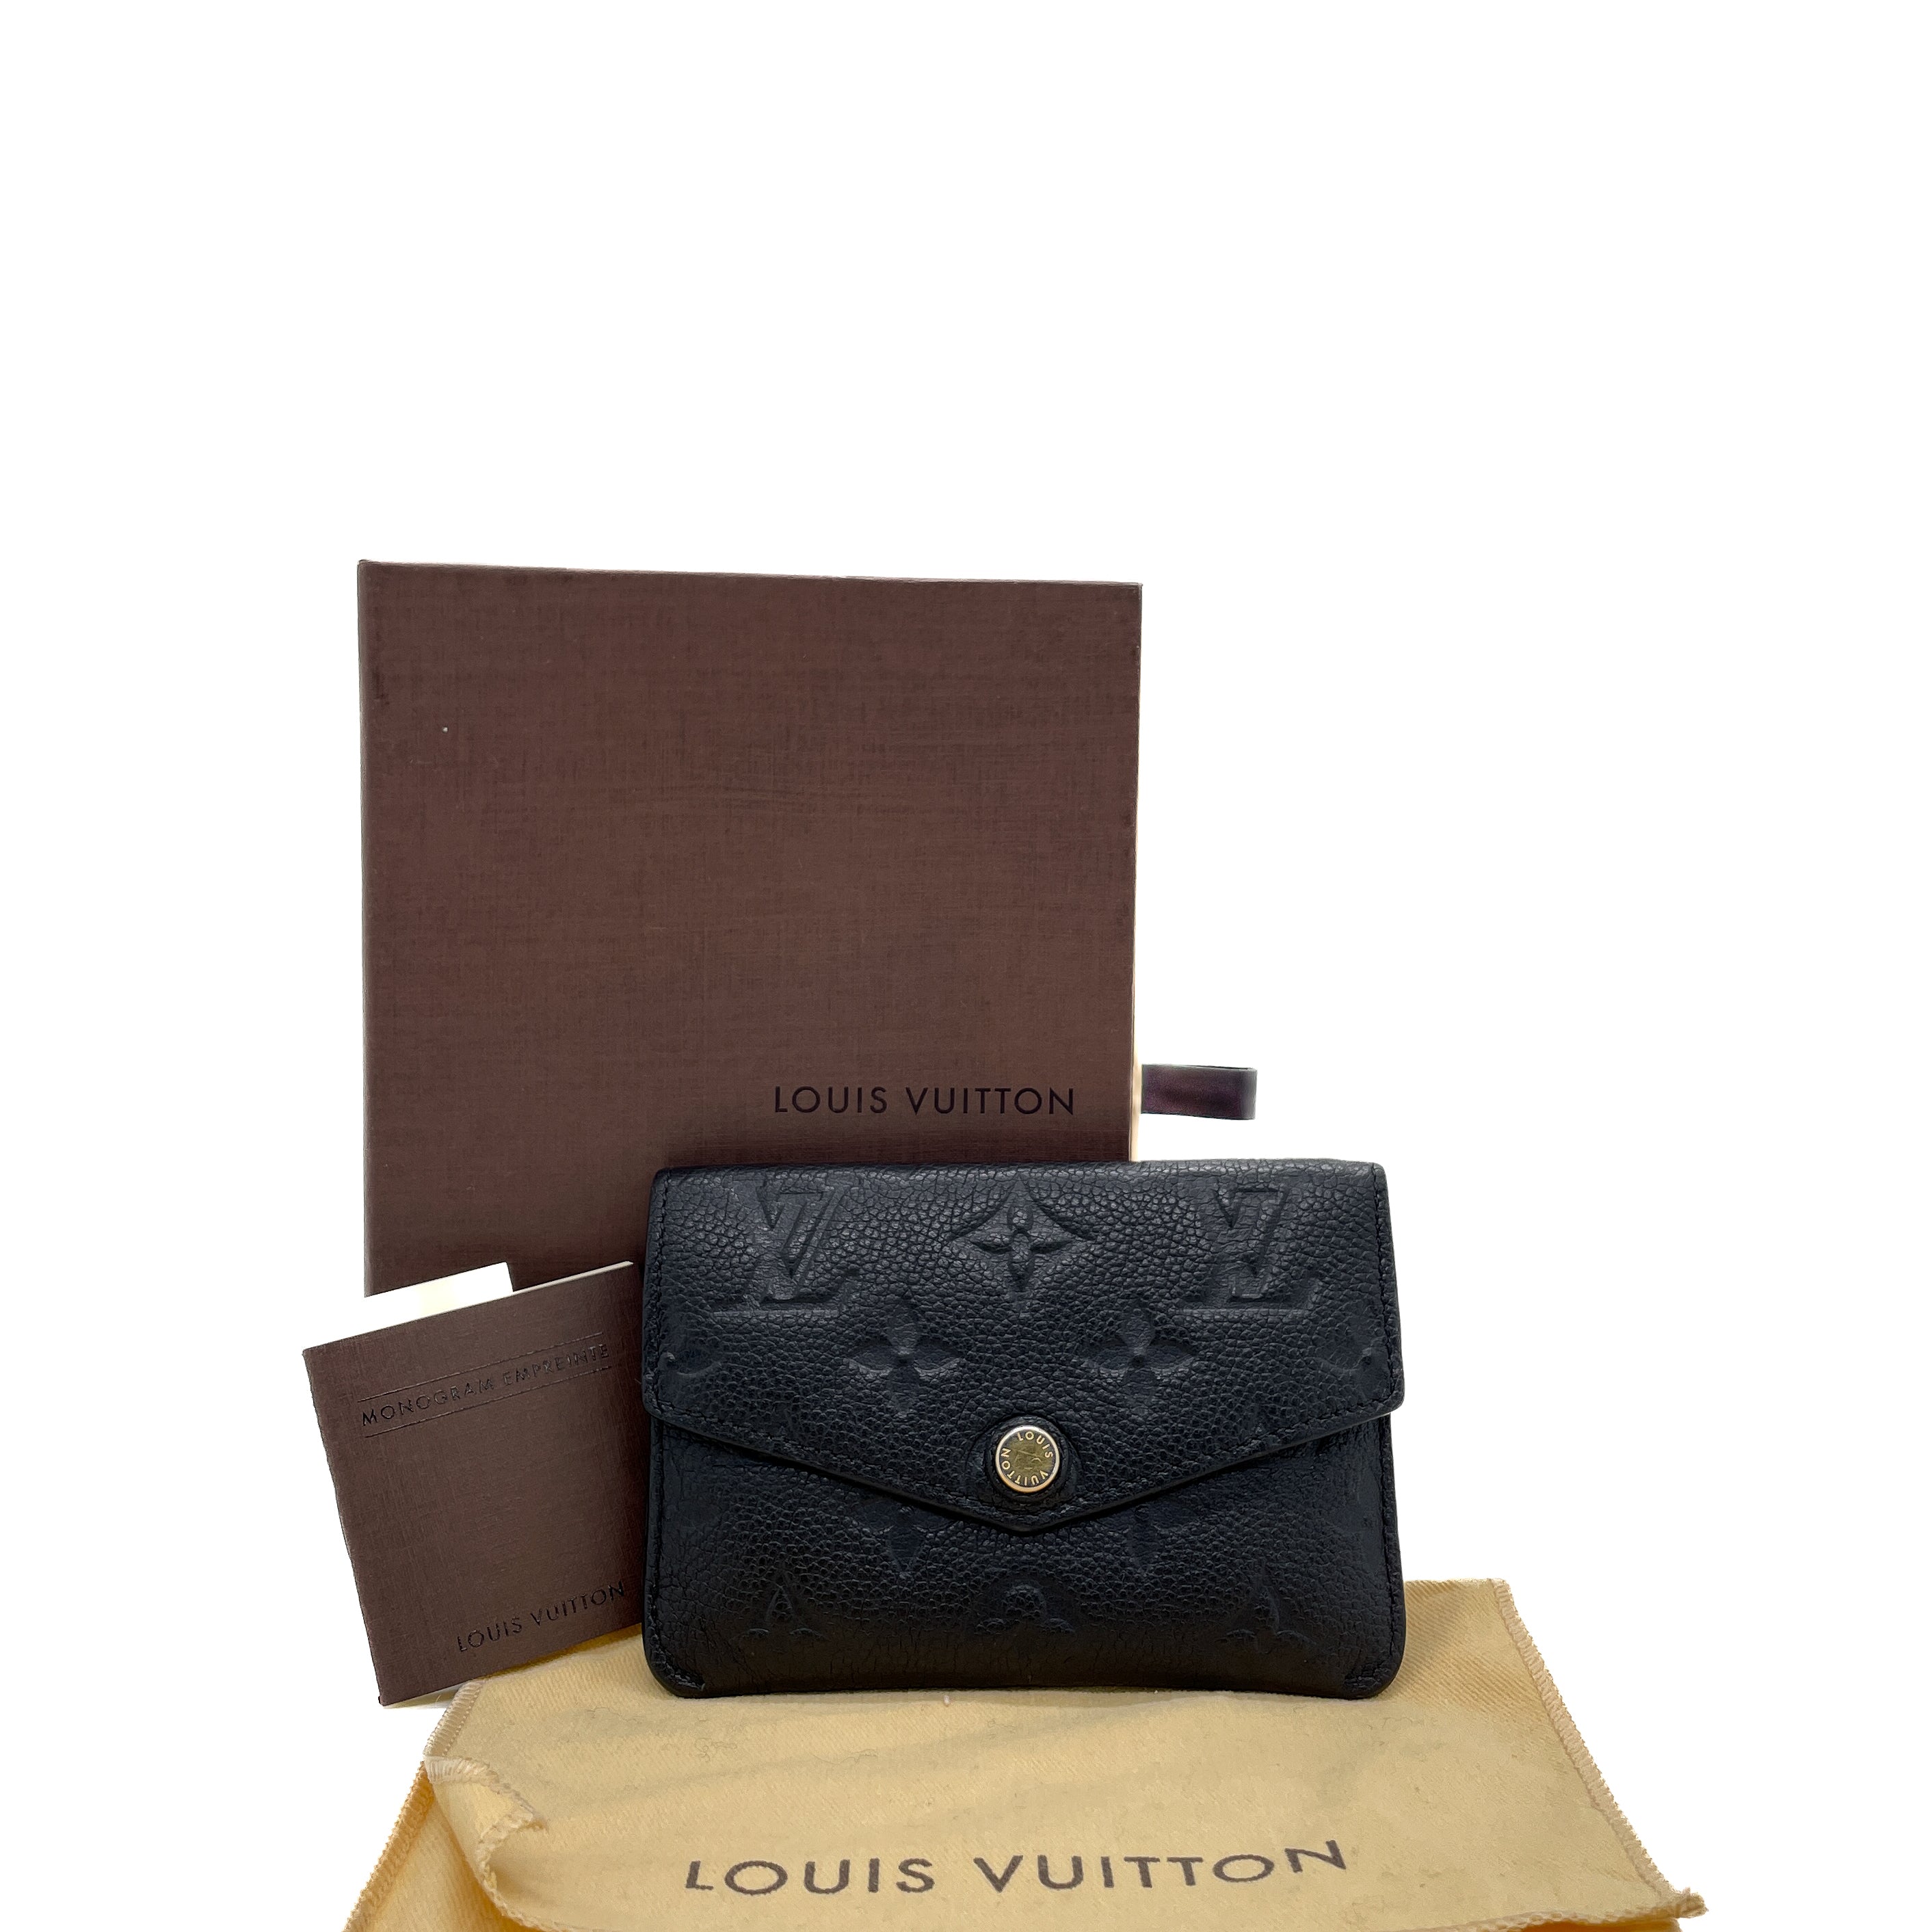 Louis Vuitton Empreinte Leather Pouch - Black Wallets, Accessories -  LOU764800